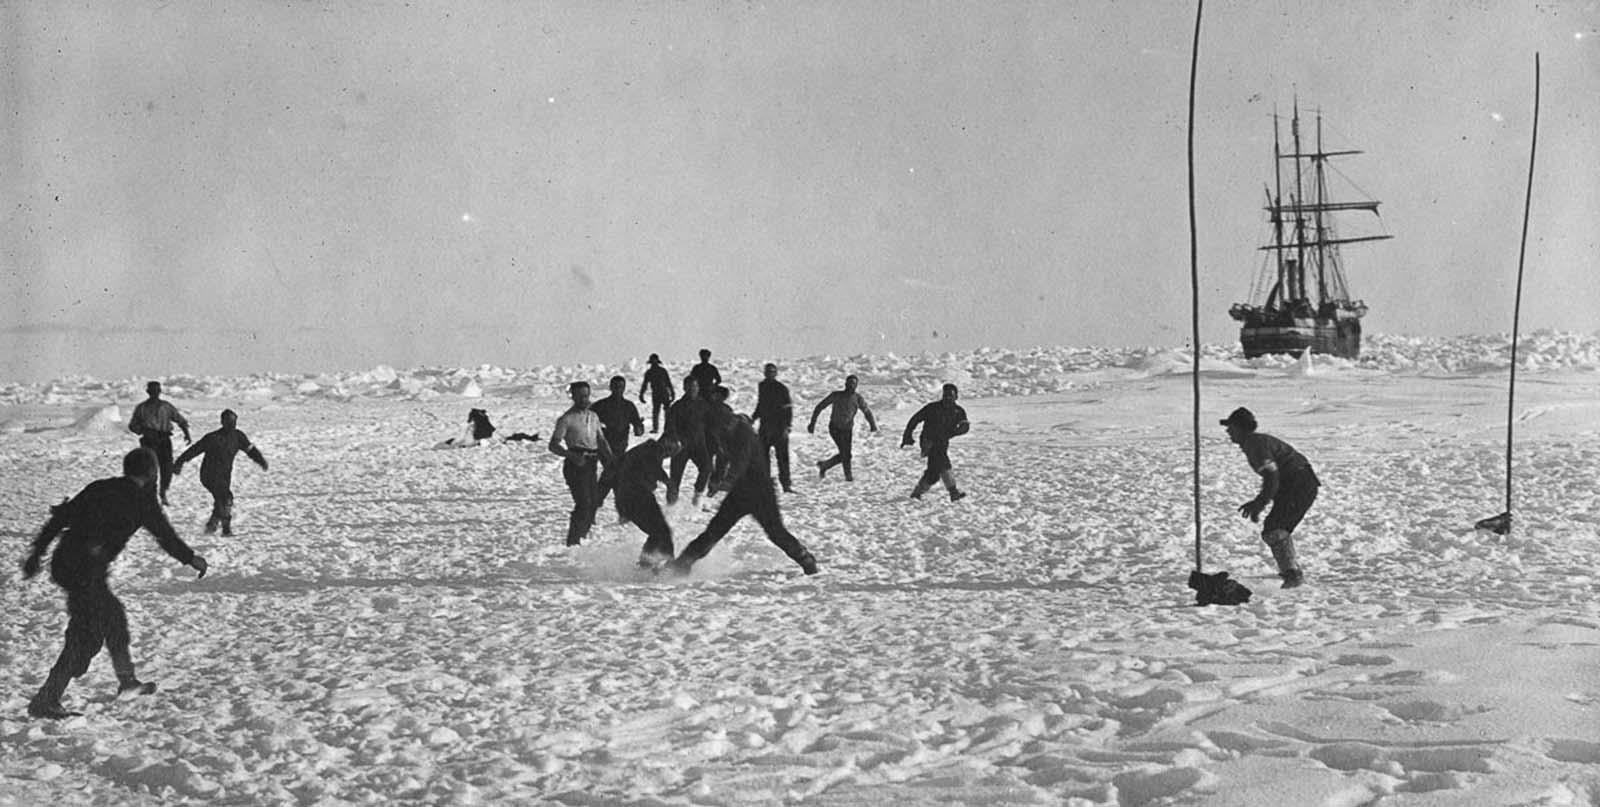 Crew plays soccer on the ice near Endurance.